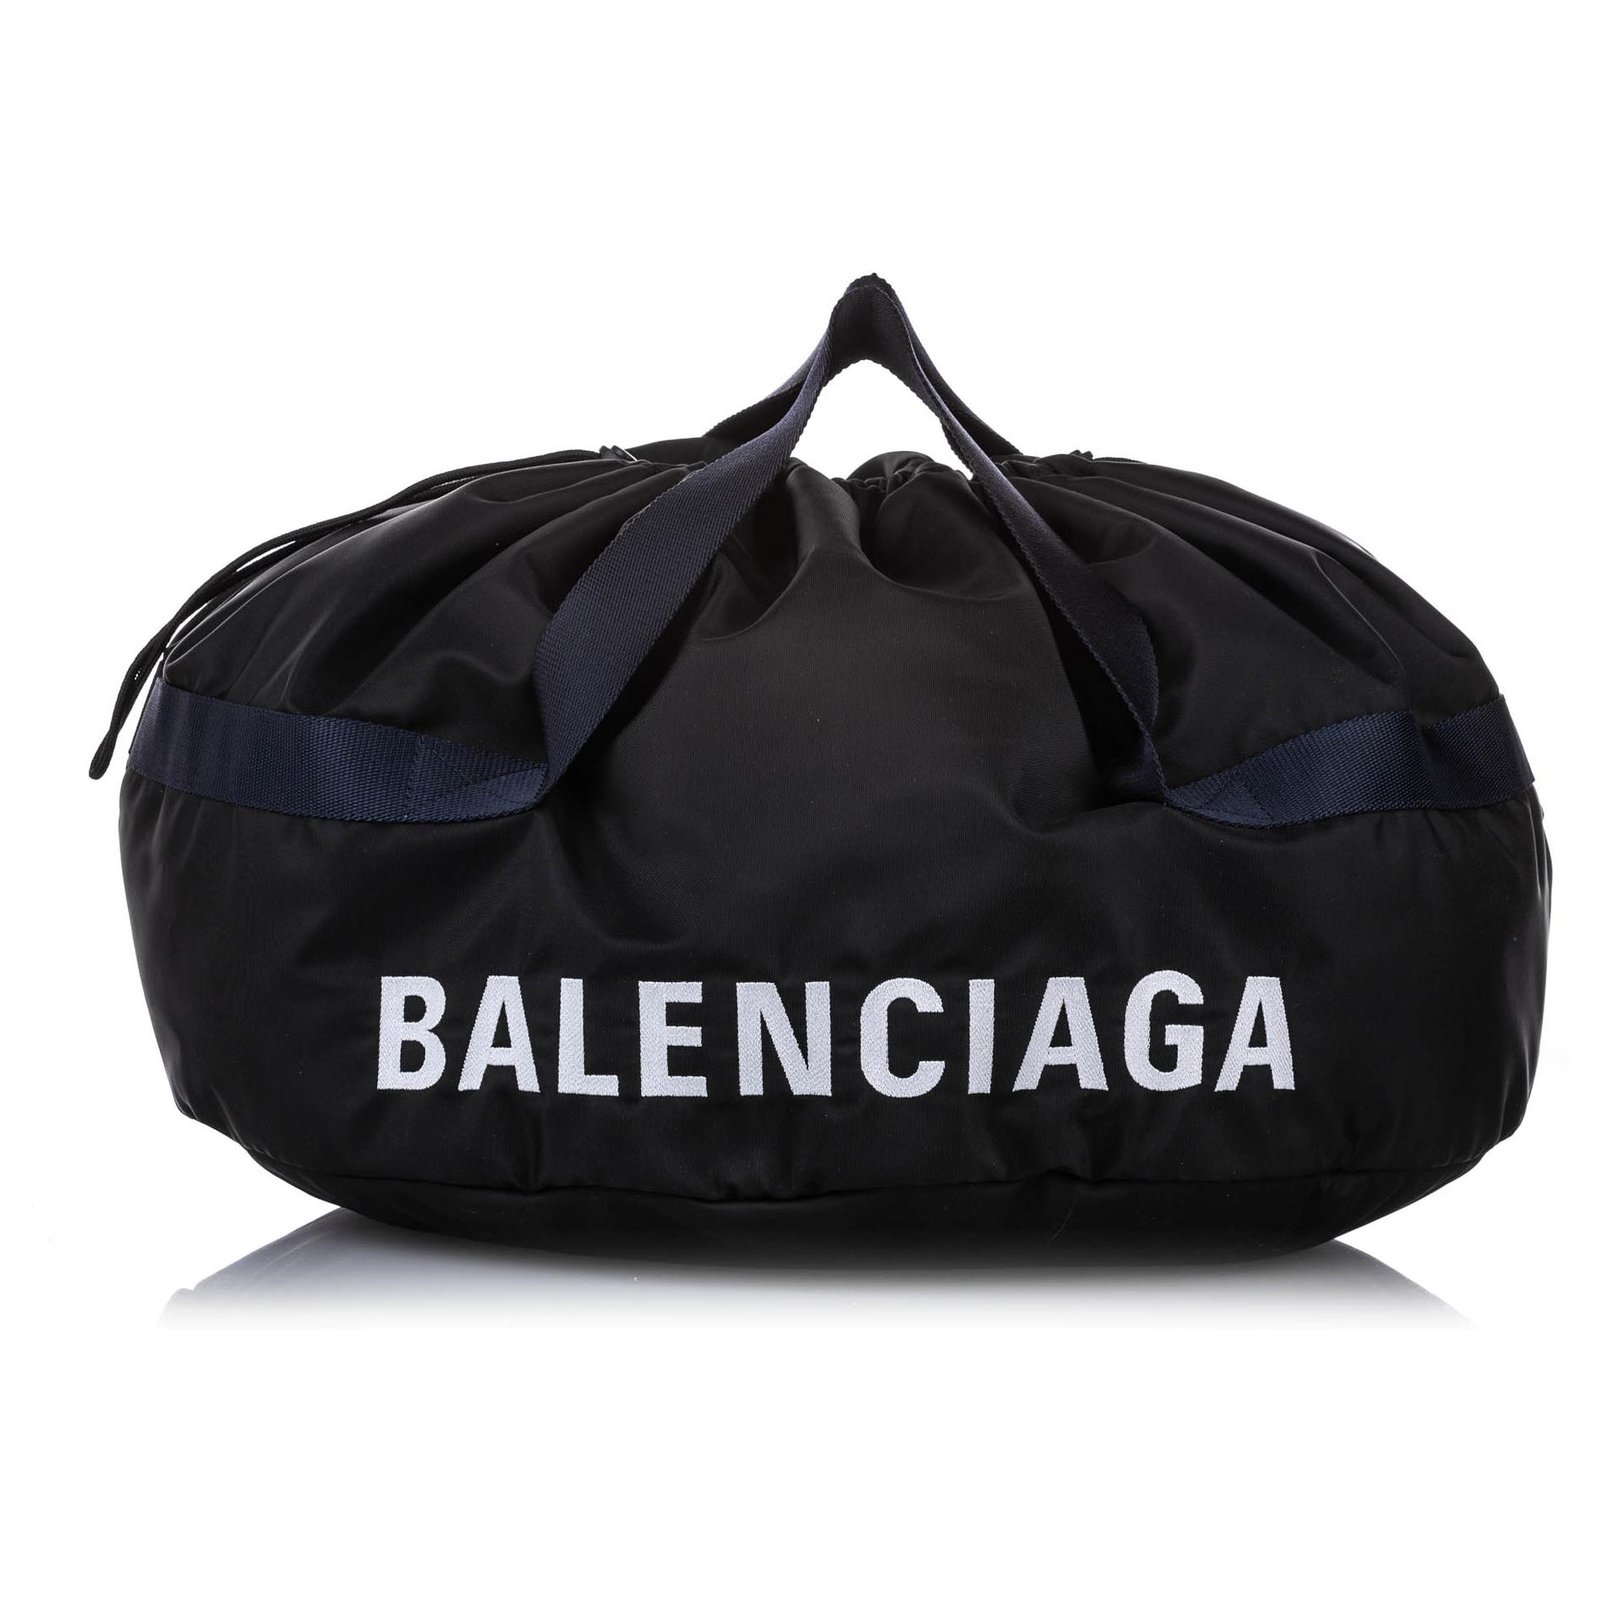 balenciaga travel bag